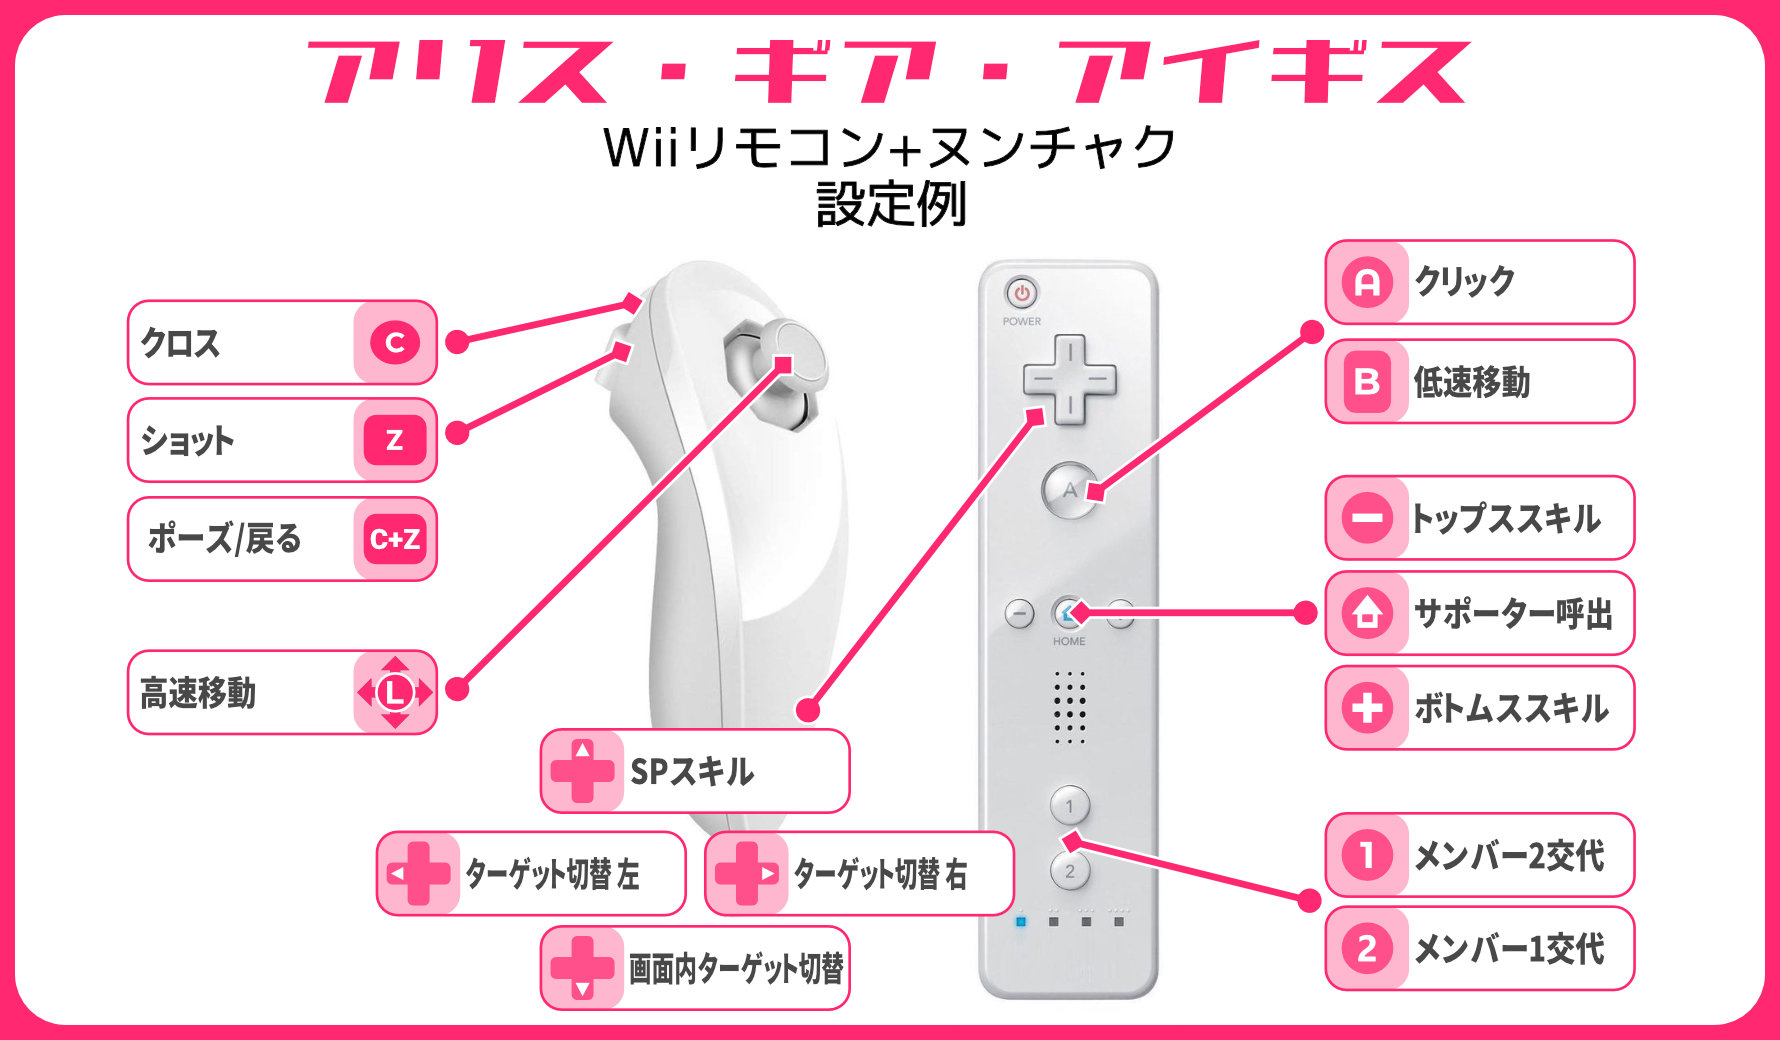 おっさん On Twitter Wiiリモコン をwindows10にbluetoothでペアリングして Glovepie Bluetooth機器用のjoytokeyみたいなソフト 上にて各キーを設定してます 実際に Wiiで遊ぶ時と同じようにリモコンを向けるだけでマウスカーソルも動かせるので これで自在にフリック